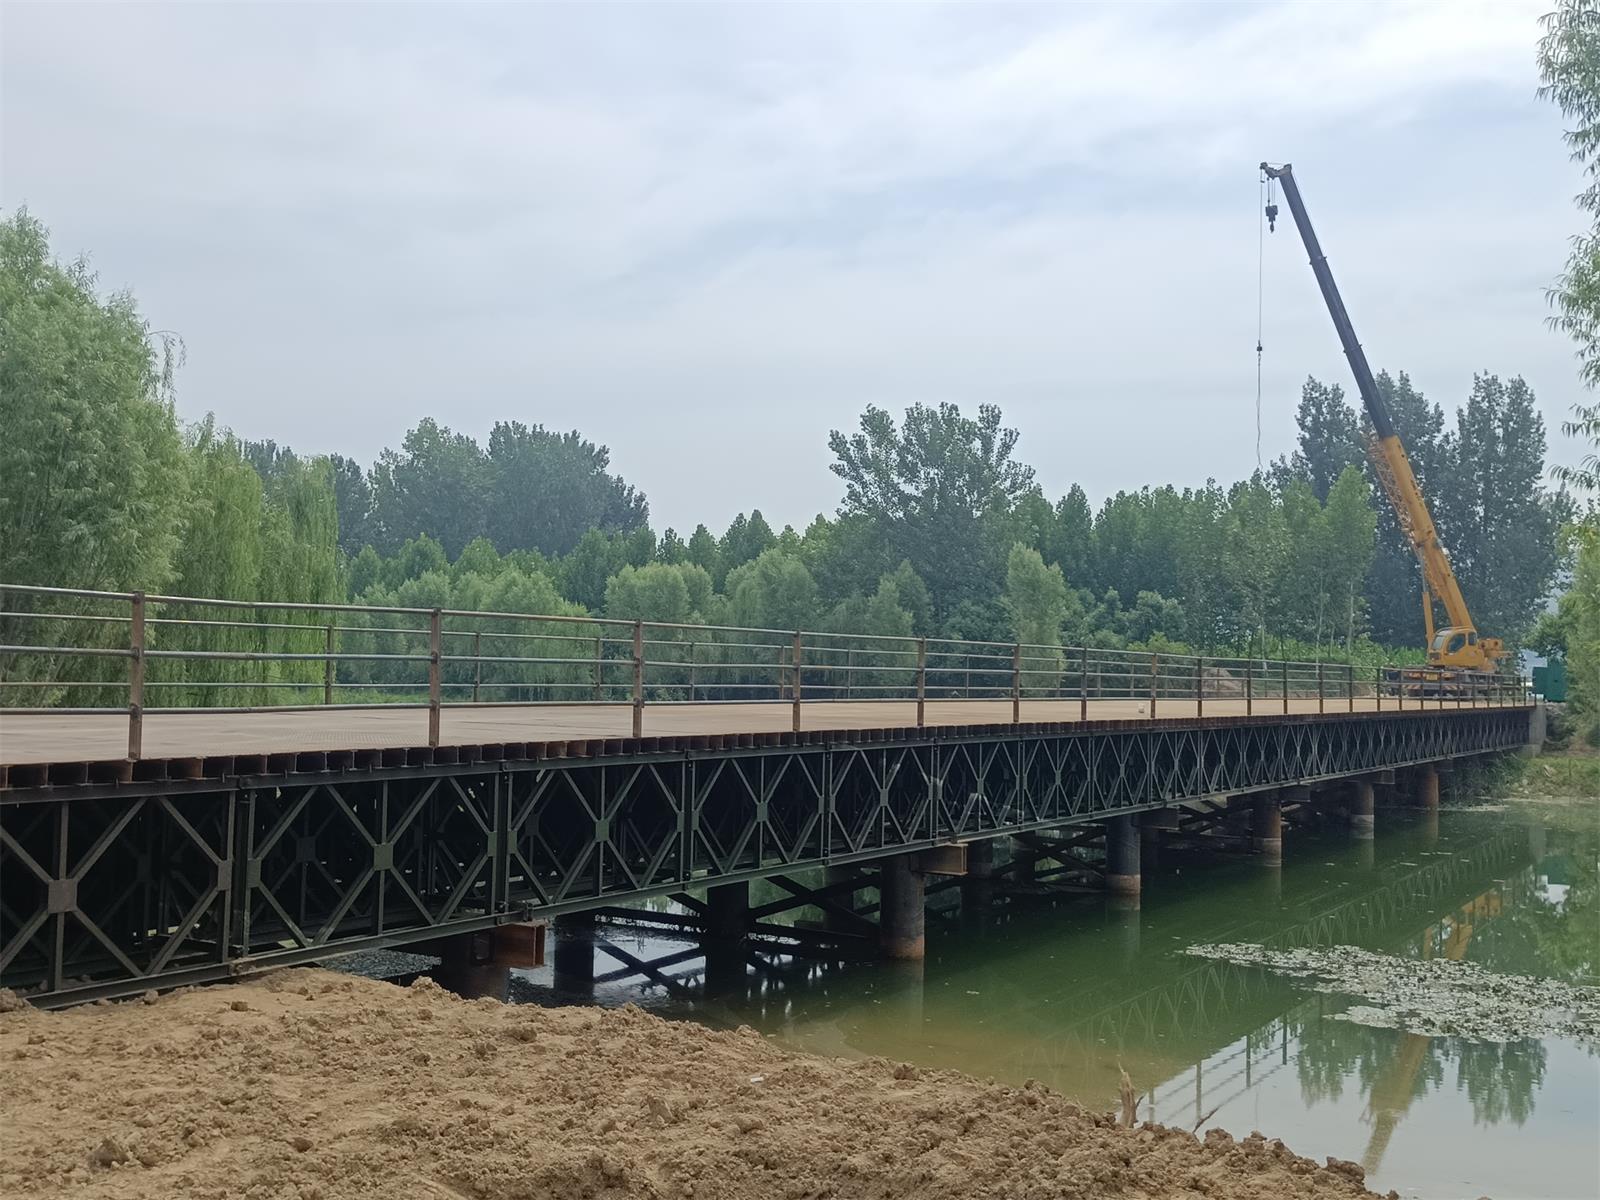 湖南浩潤路橋機械有限公司,郴州公路鋼橋設計制造加工,郴州鋼管樁橋梁設計制造加工